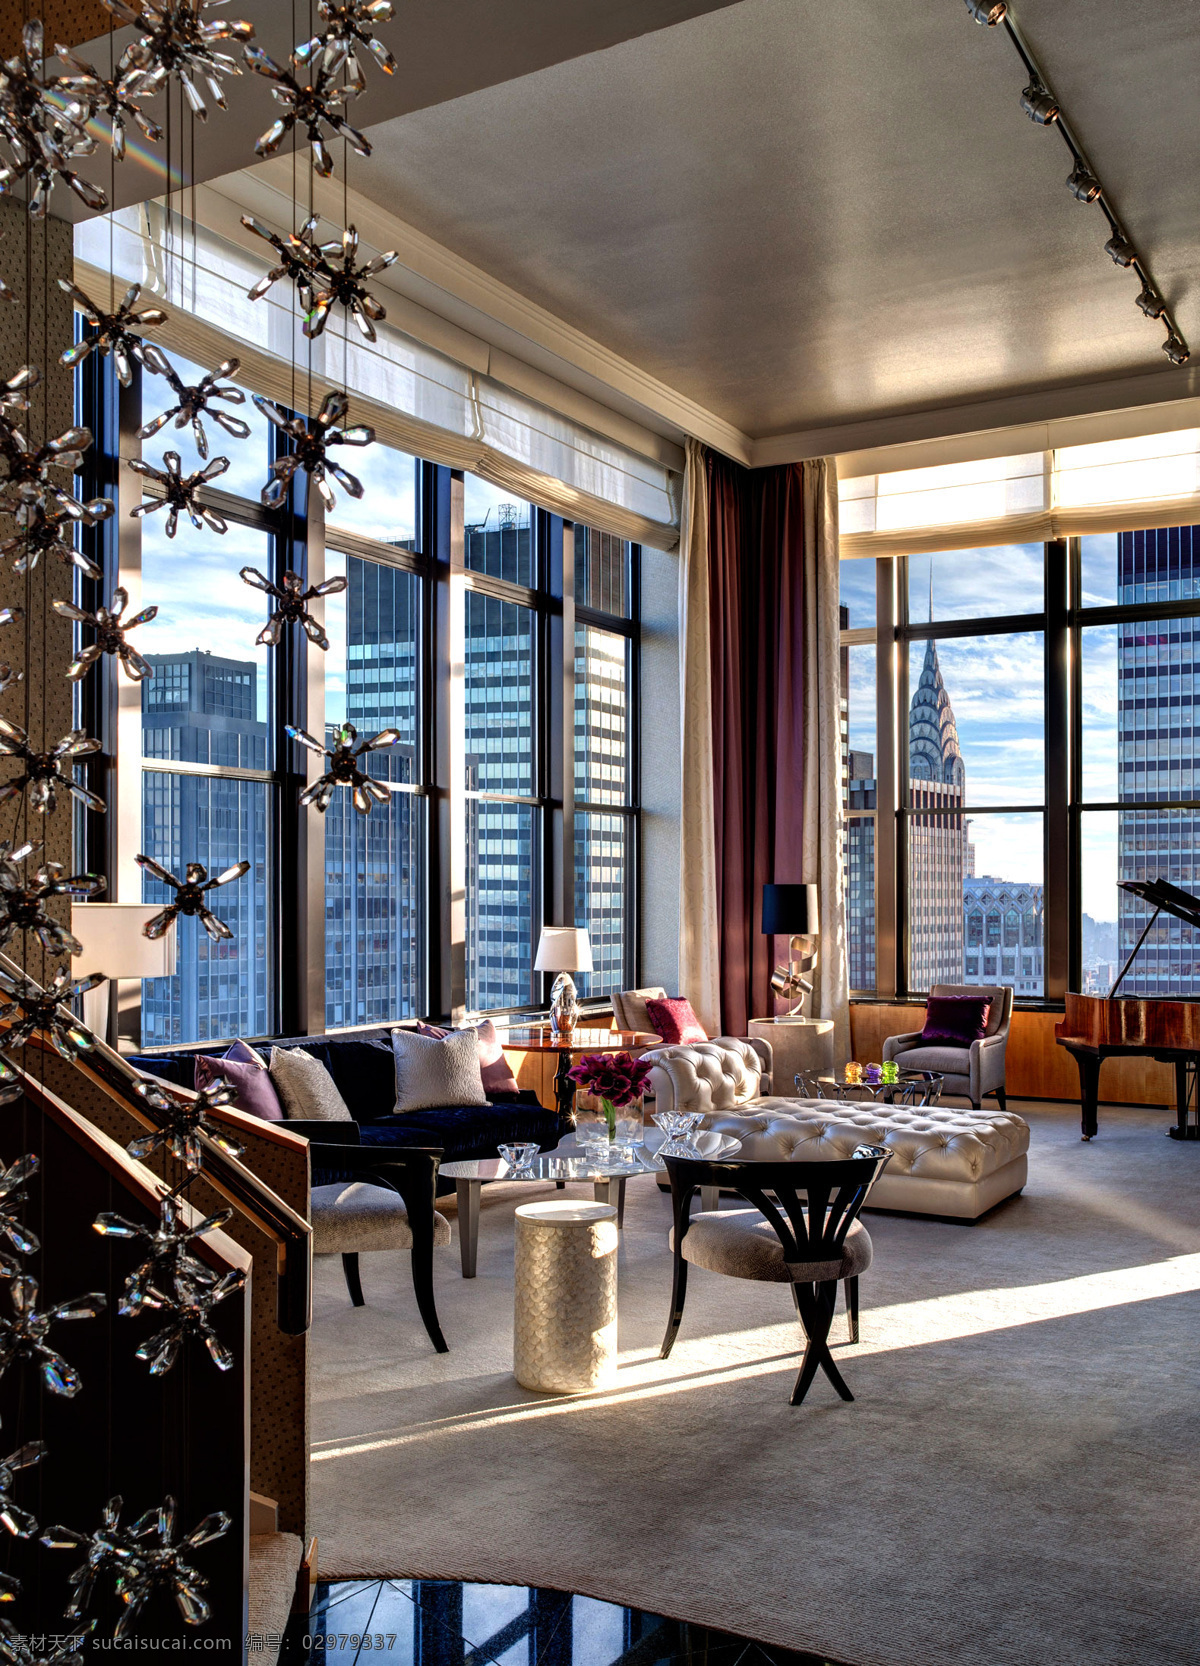 纽约高级公寓 套房 公寓 繁华街区 商业街区 顶级 景观与建筑 建筑园林 室内摄影